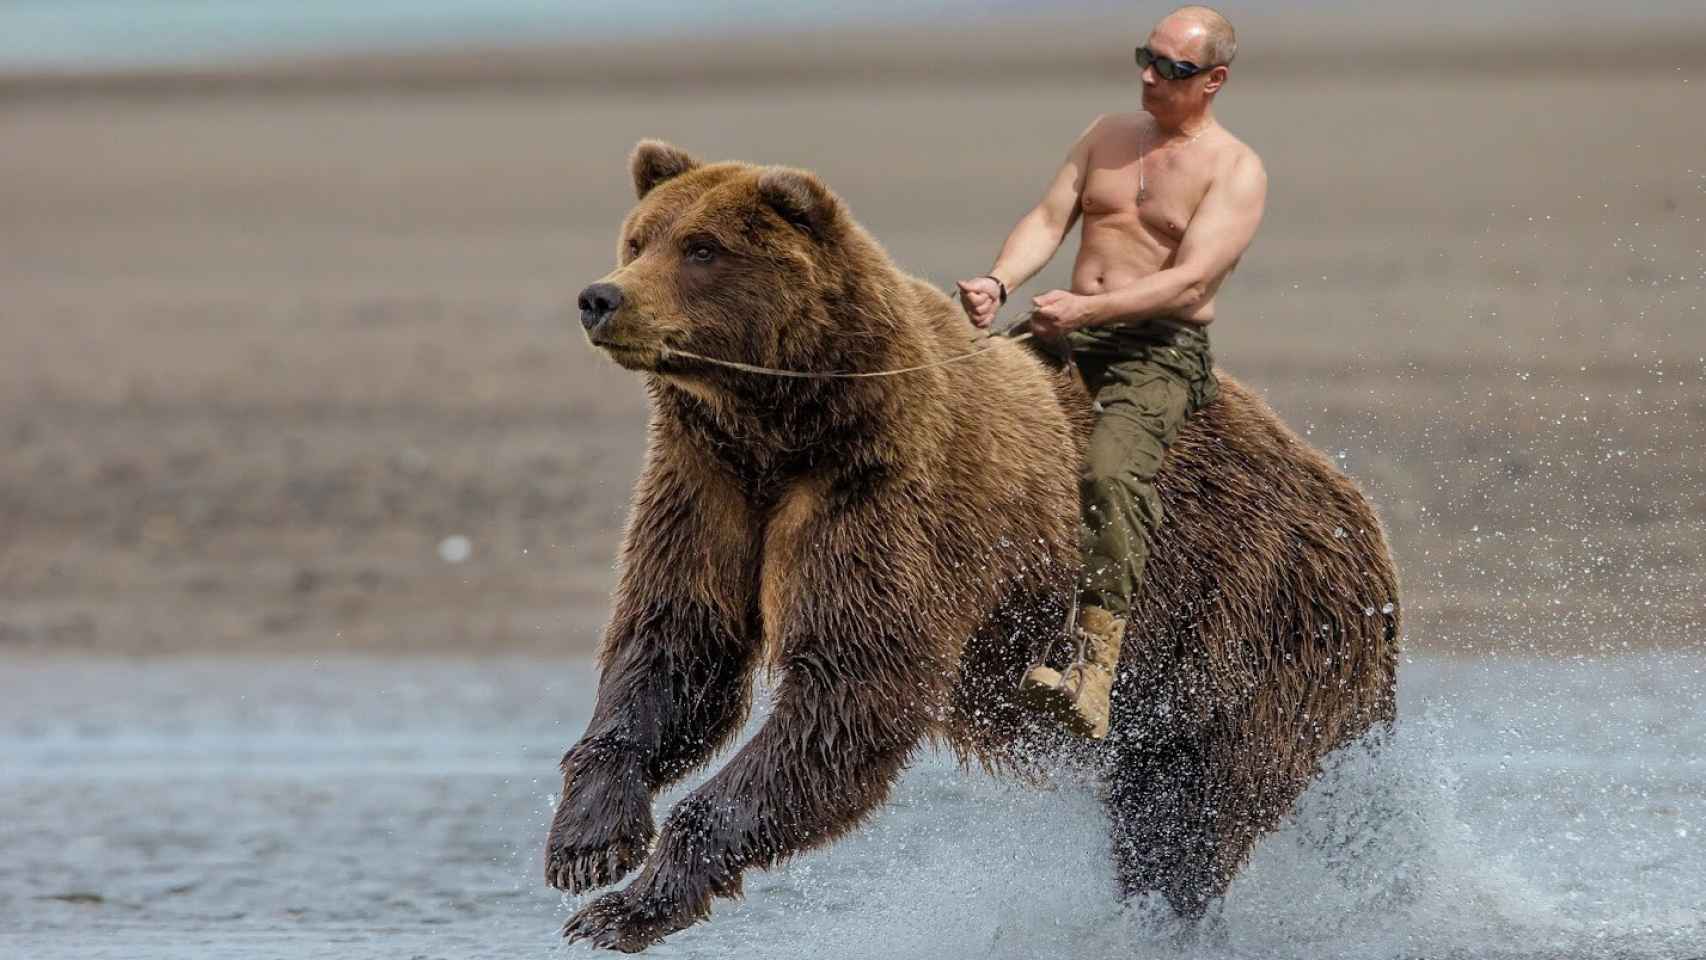 Uno de los memes de internet que muestran a Putin cabalgando un oso, símbolo de Rusia